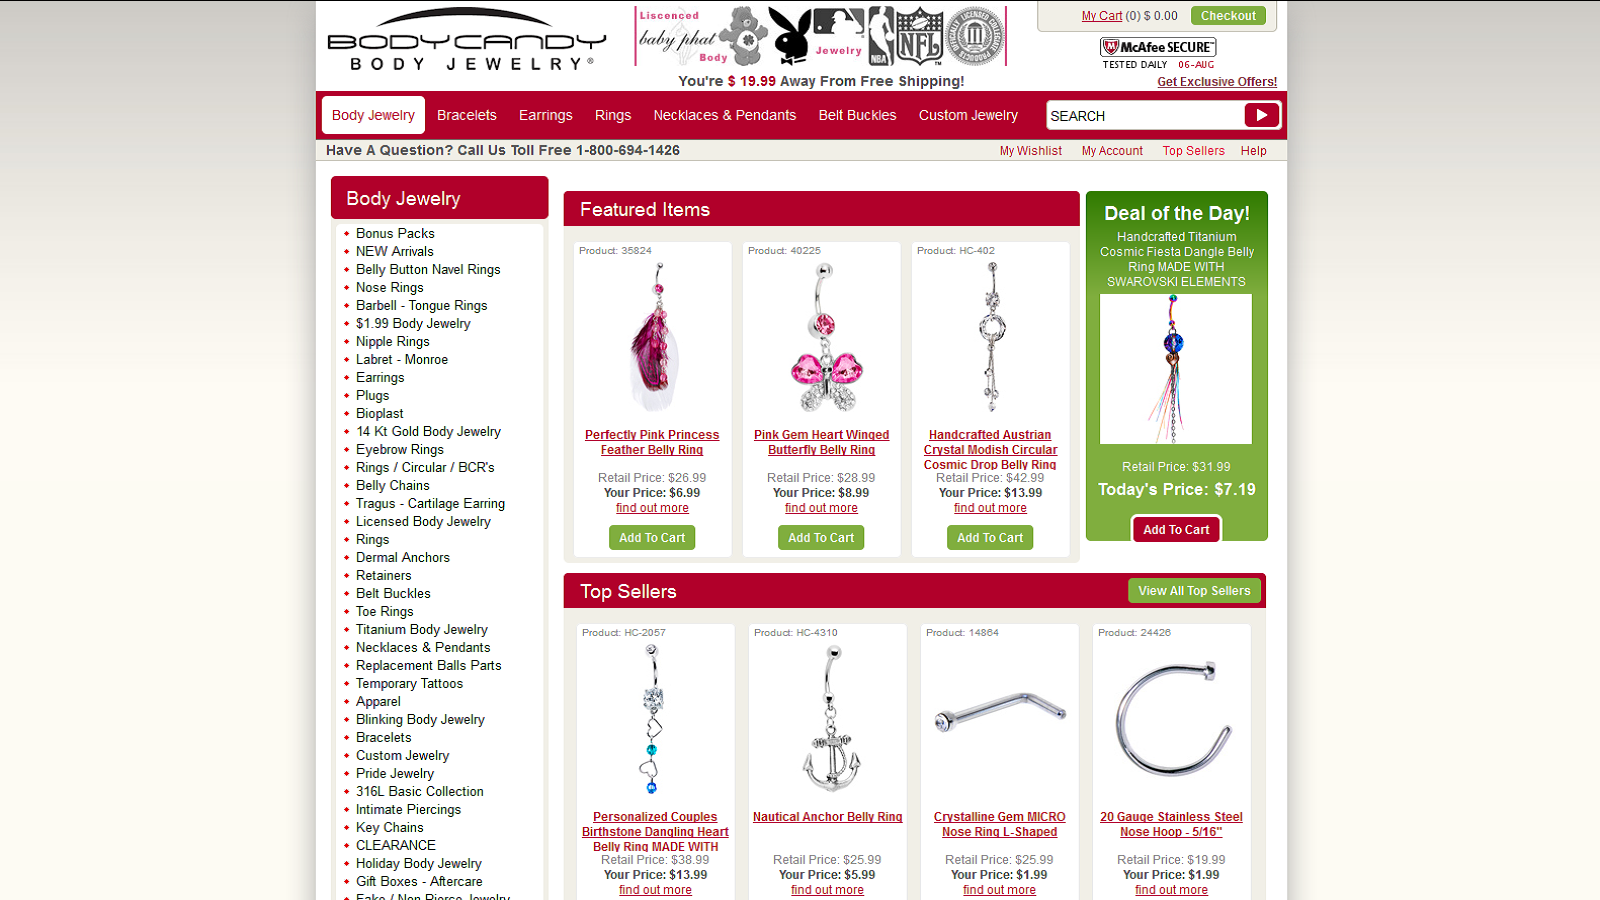 Best Jewelry Deals Online!